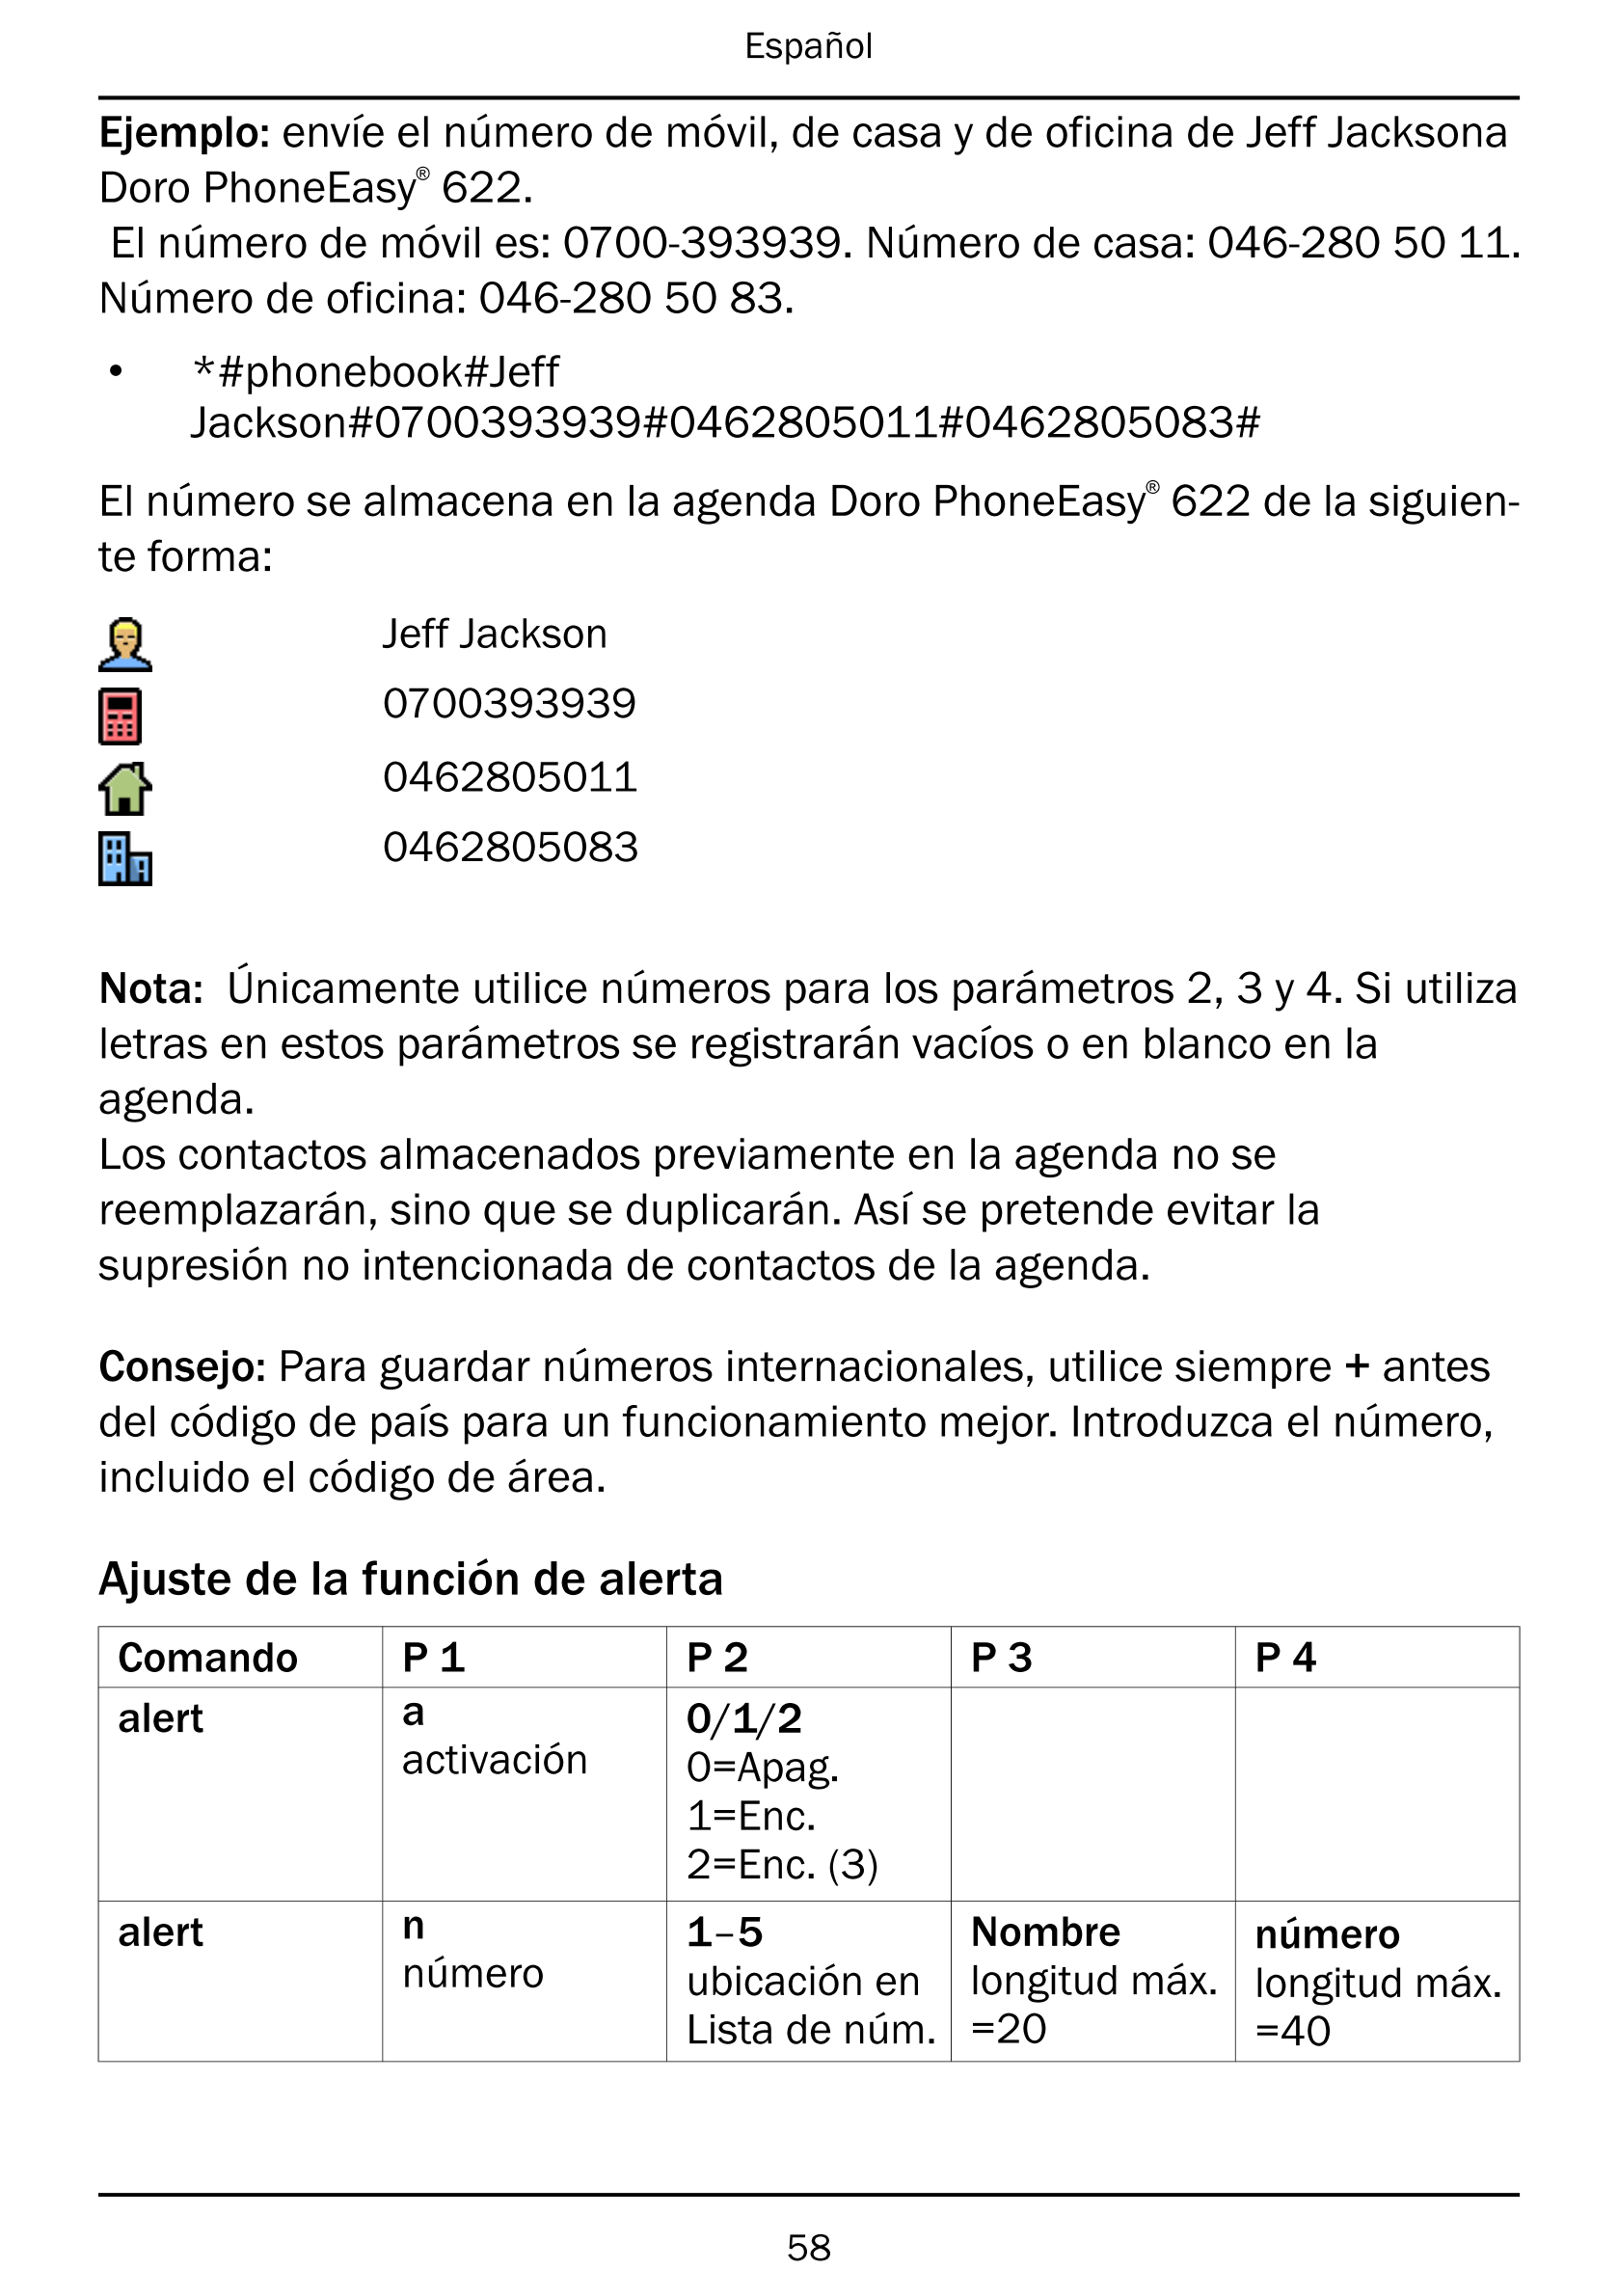 Español
Ejemplo: envíe el número de móvil, de casa y de oficina de Jeff Jacksona
Doro PhoneEasy® 622.
El número de móvil es: 070